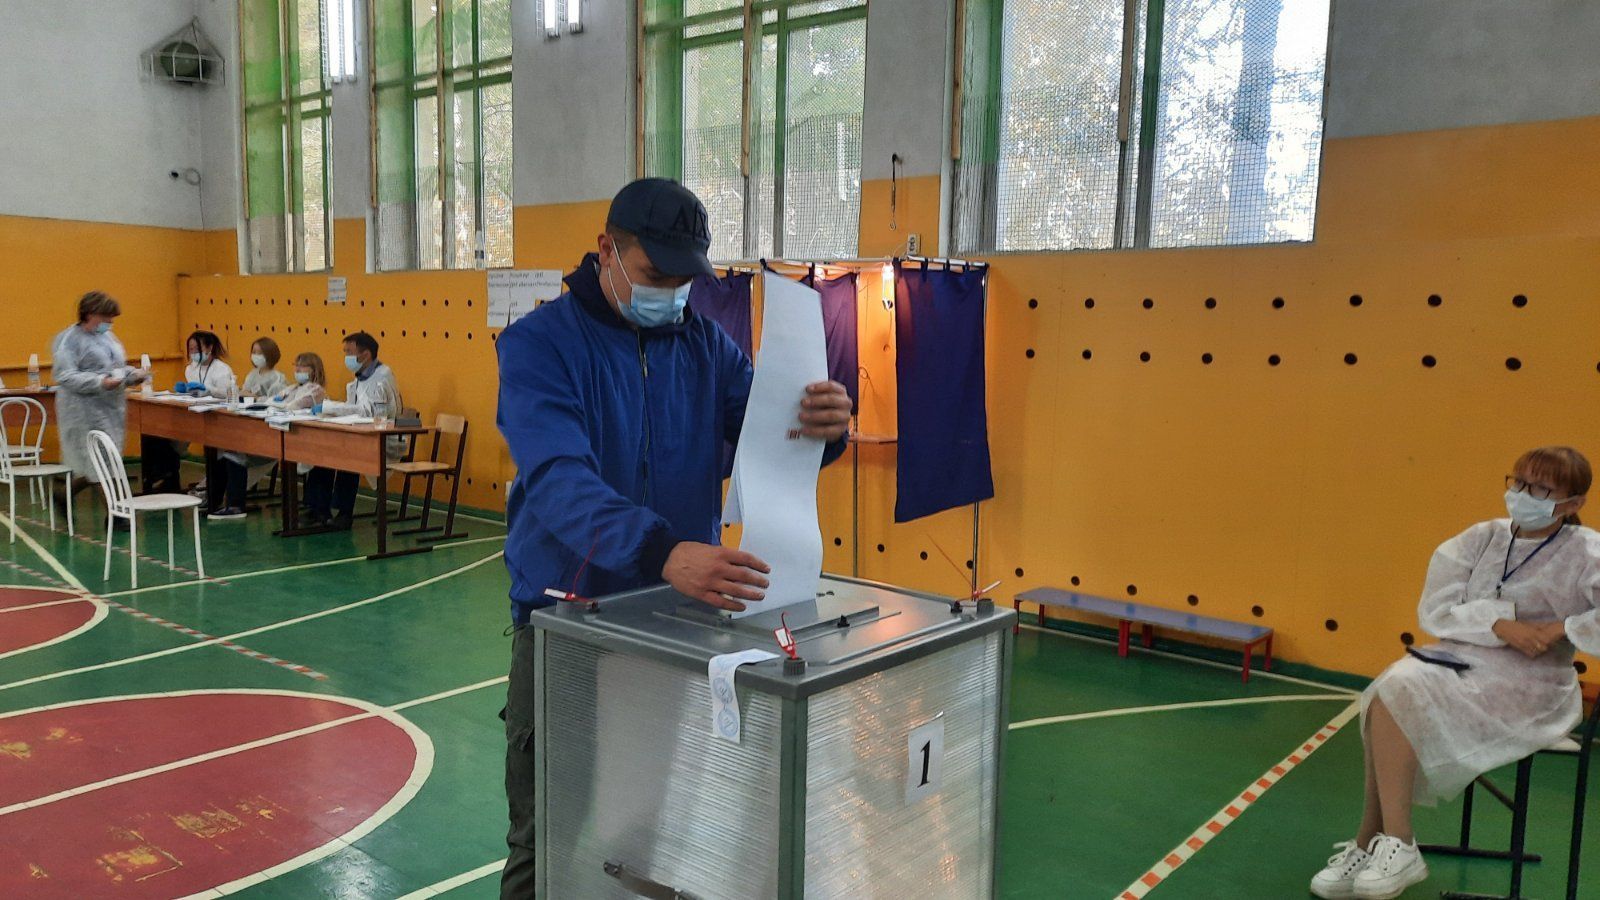 Фото В Бурятии члены УИК встретили впервые проголосовавшего улан-удэнца аплодисментами (ВИДЕО)